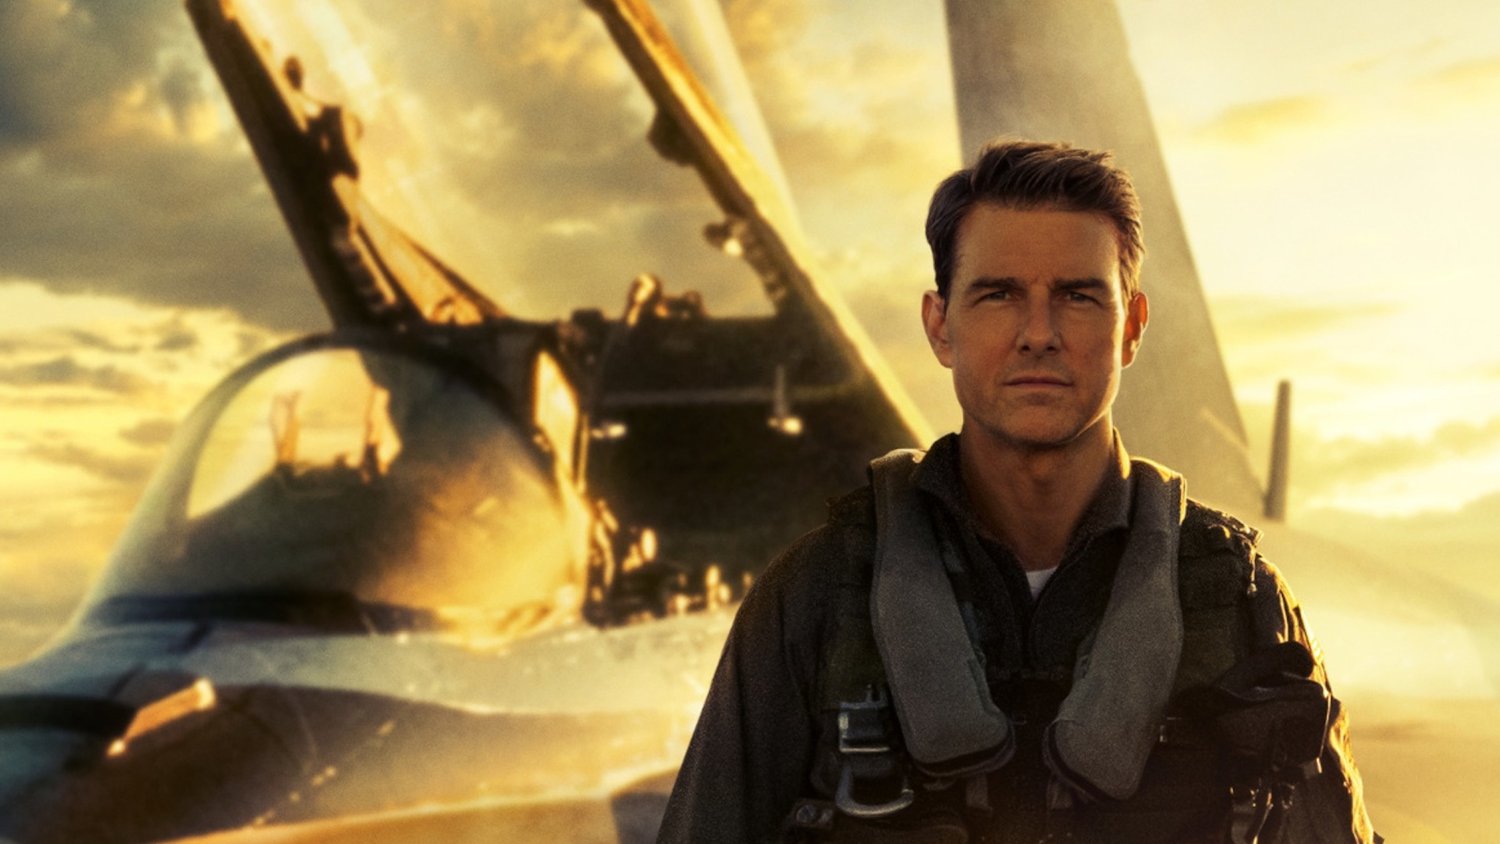 Top Gun 3 supostamente em desenvolvimento, Tom Cruise deve retornar